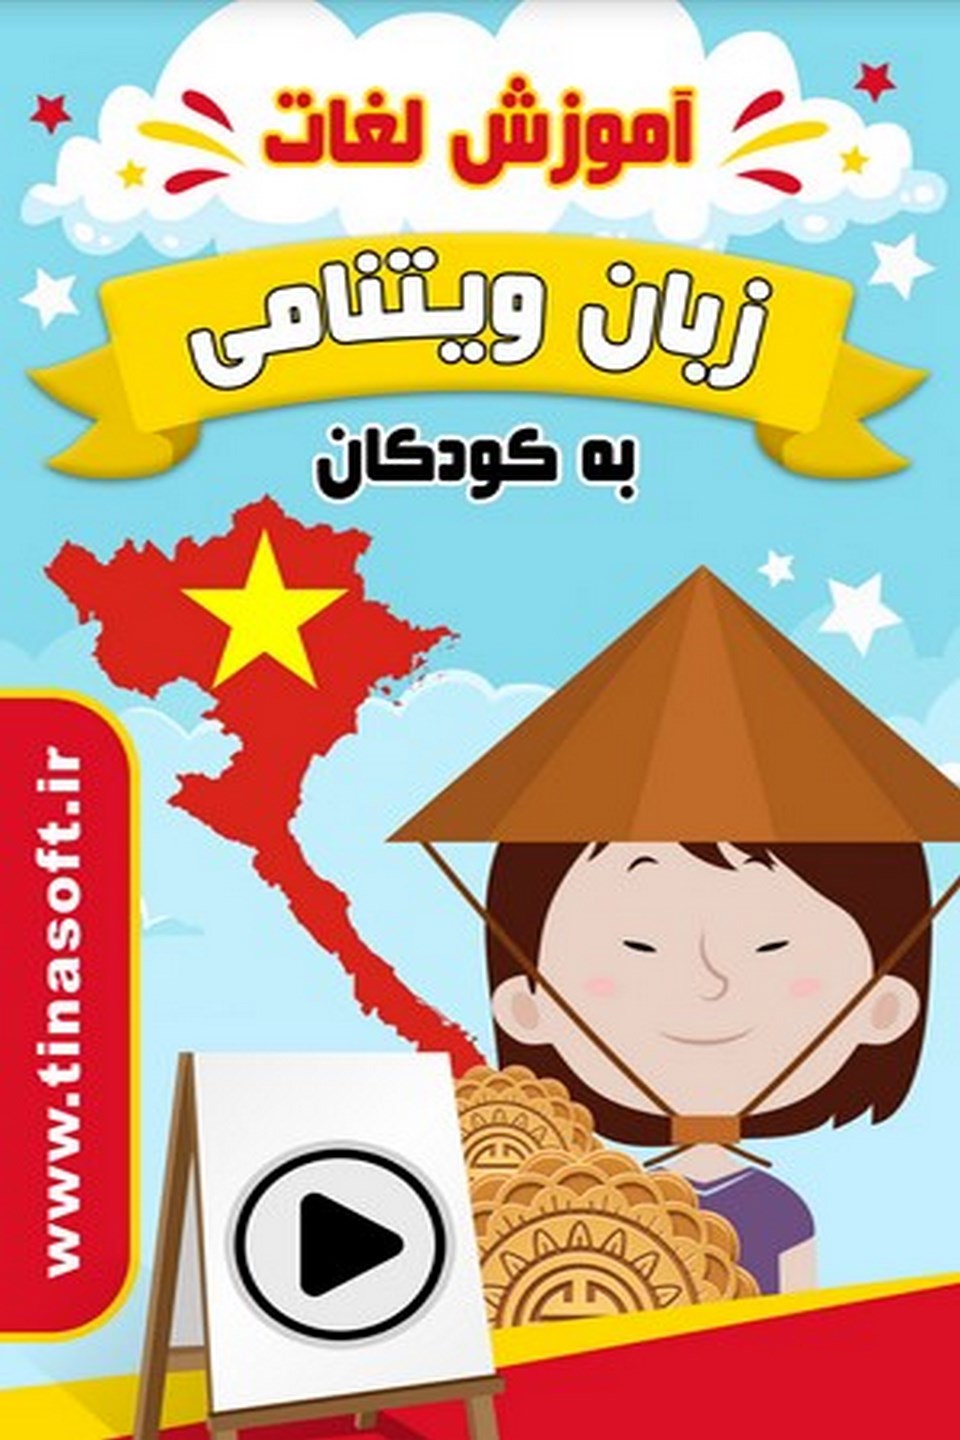 آموزش لغات زبان ویتنامی به کودکان